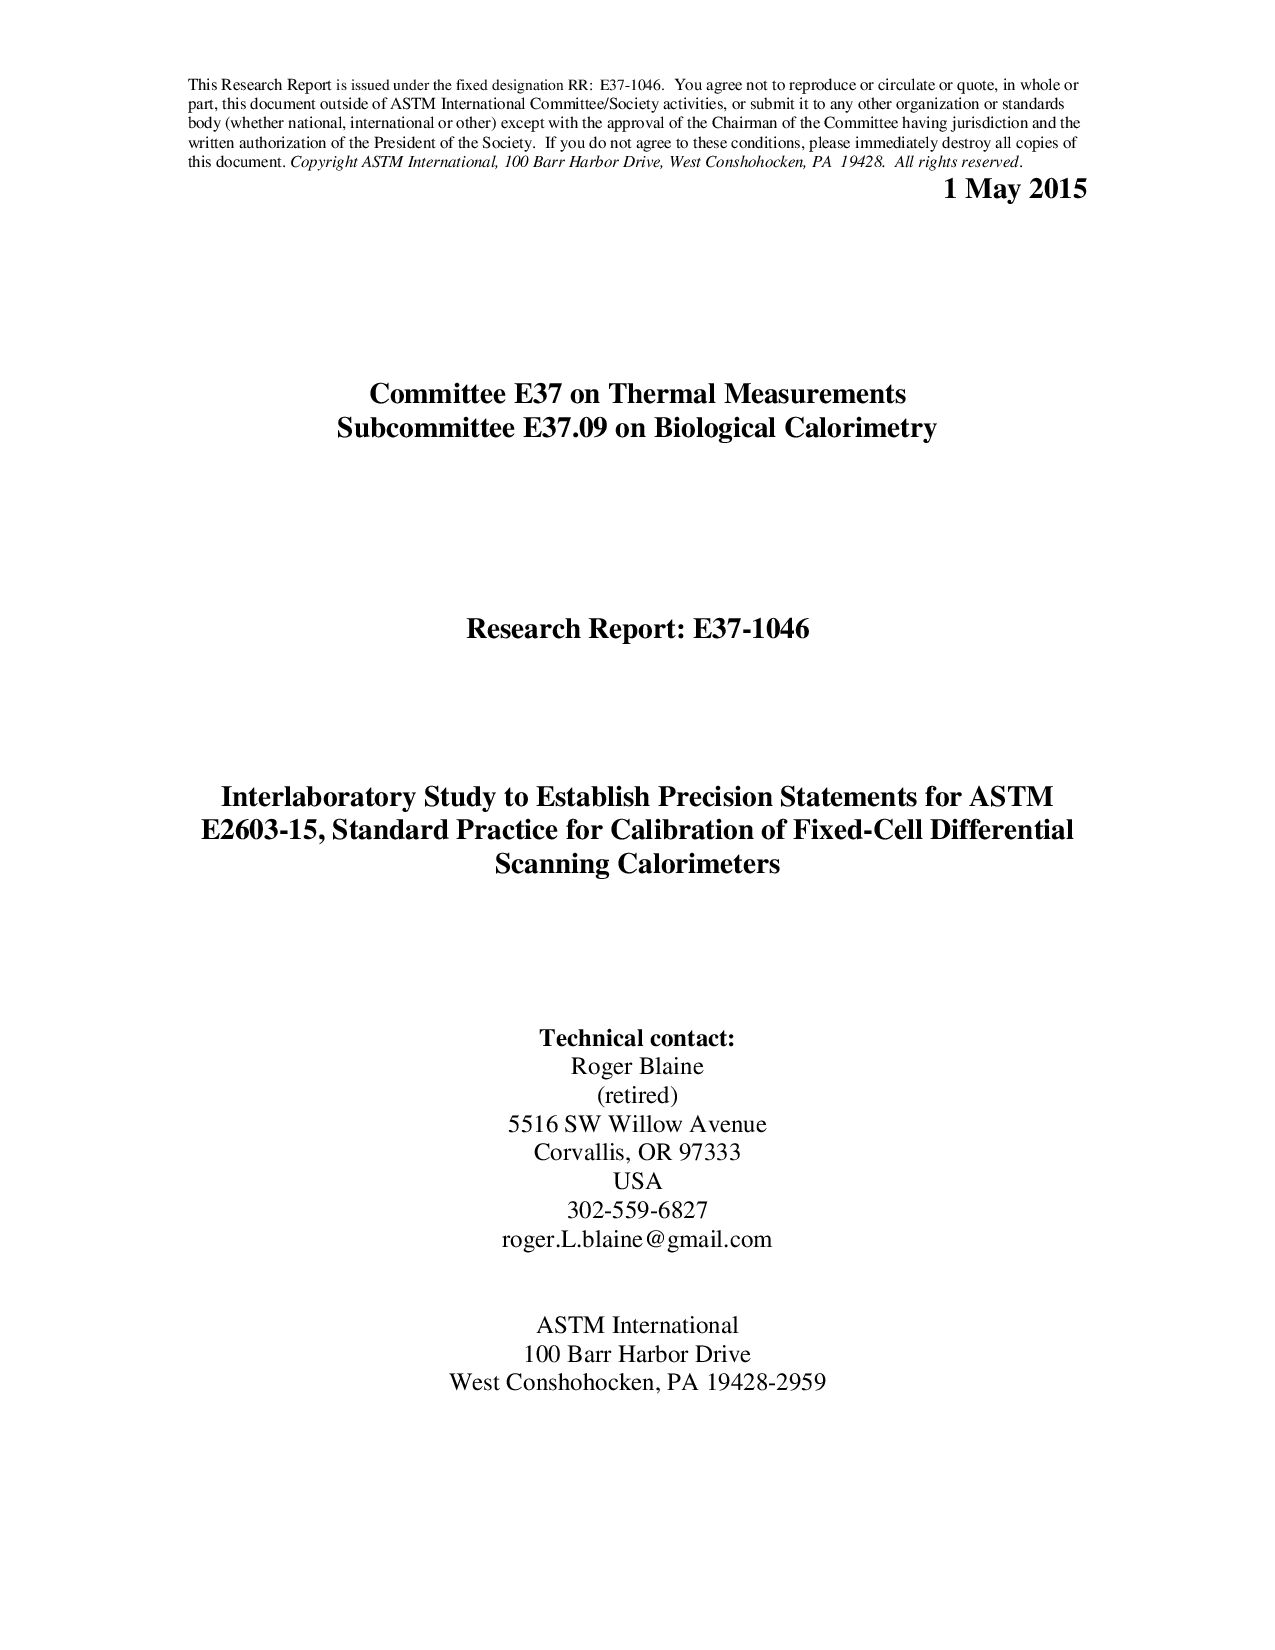 ASTM RR-E37-1046 2015封面图